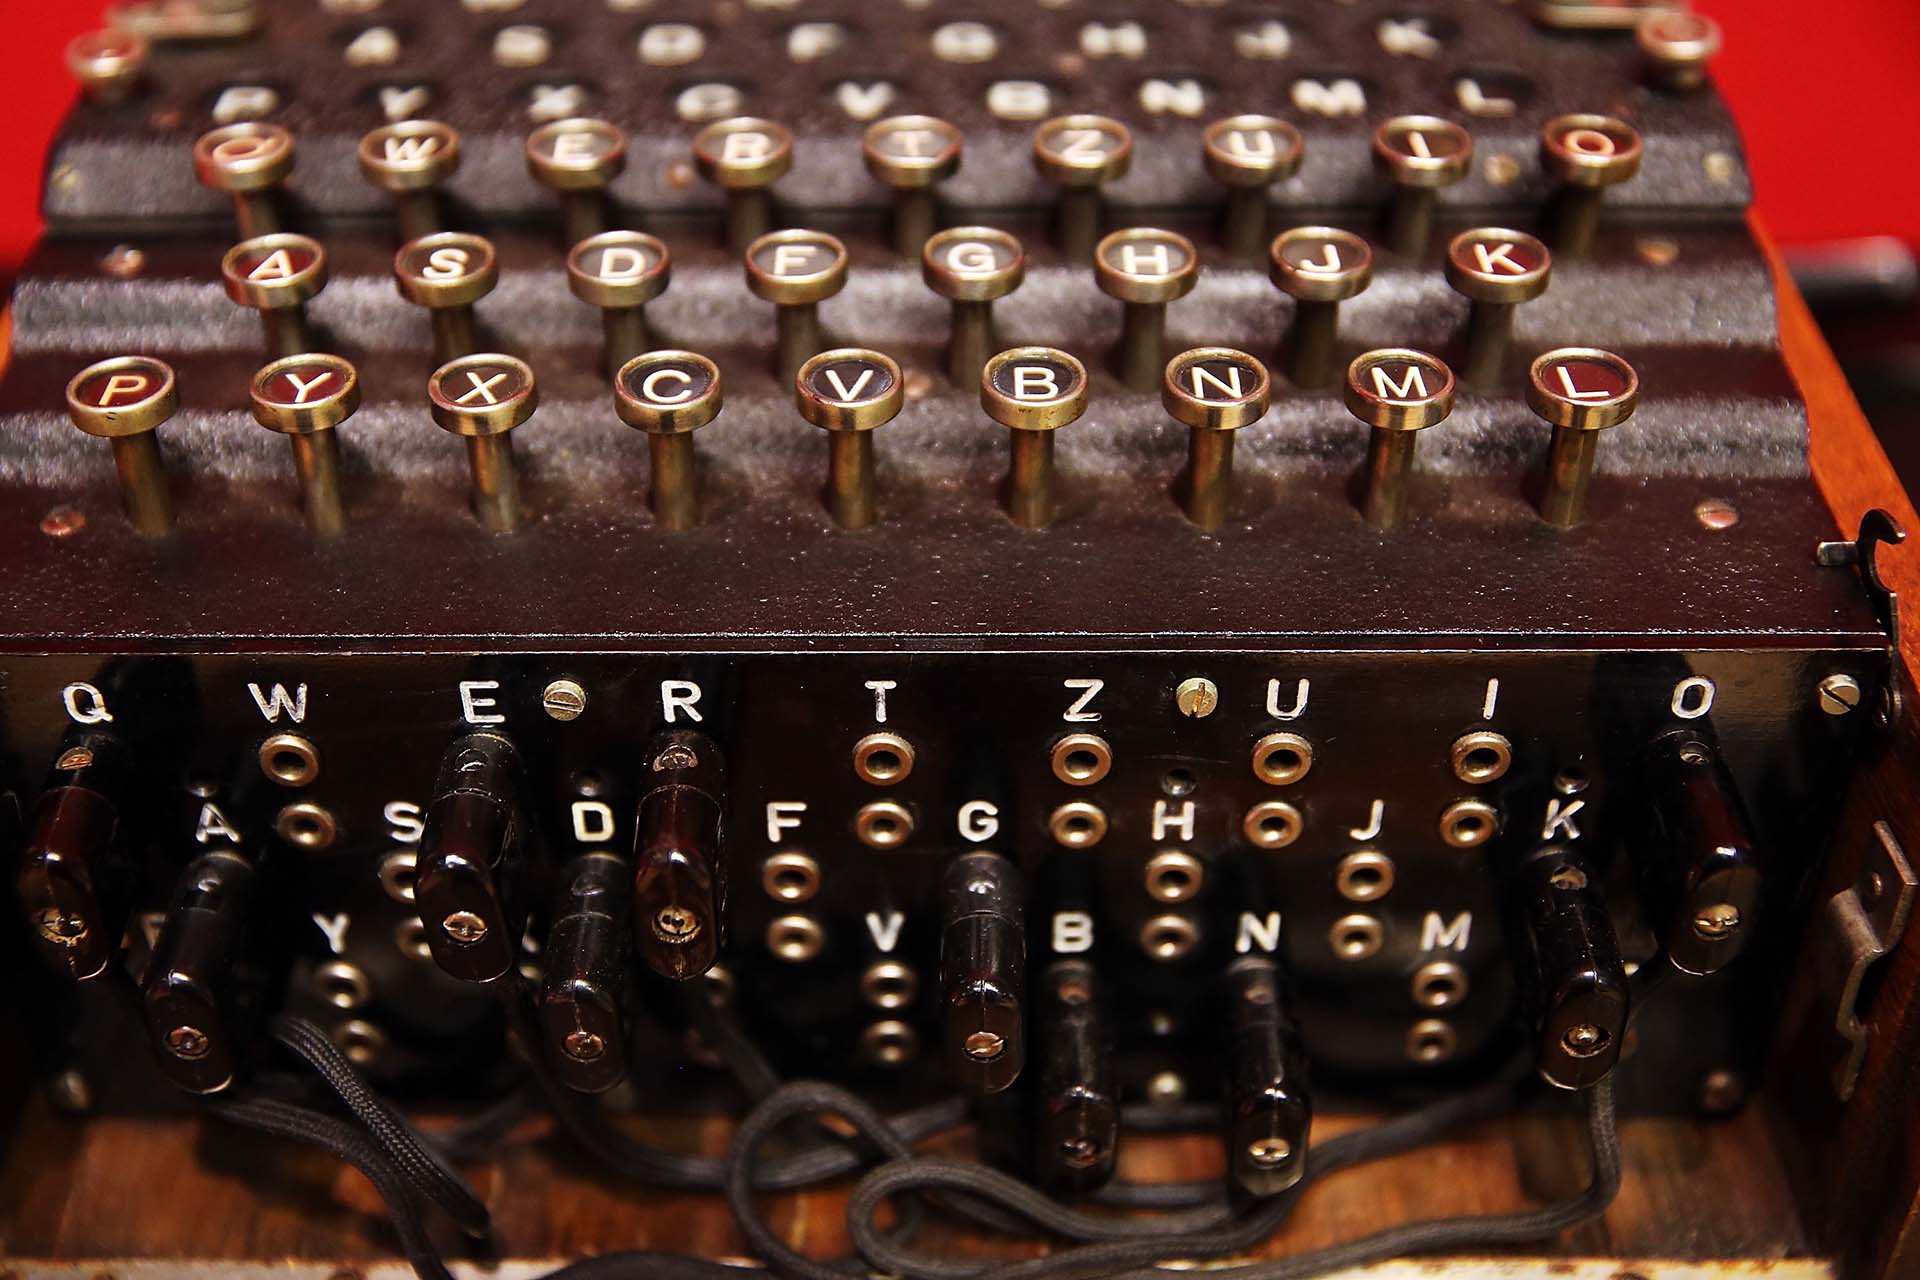 Una máquina de cifrado Enigma, creación de Alan Turing. Fue subastado en Bonham el 9 de abril de 2015 en la ciudad de Nueva York, en por lo menos 1 millón de dólares (Foto de Spencer Platt/Getty Images)